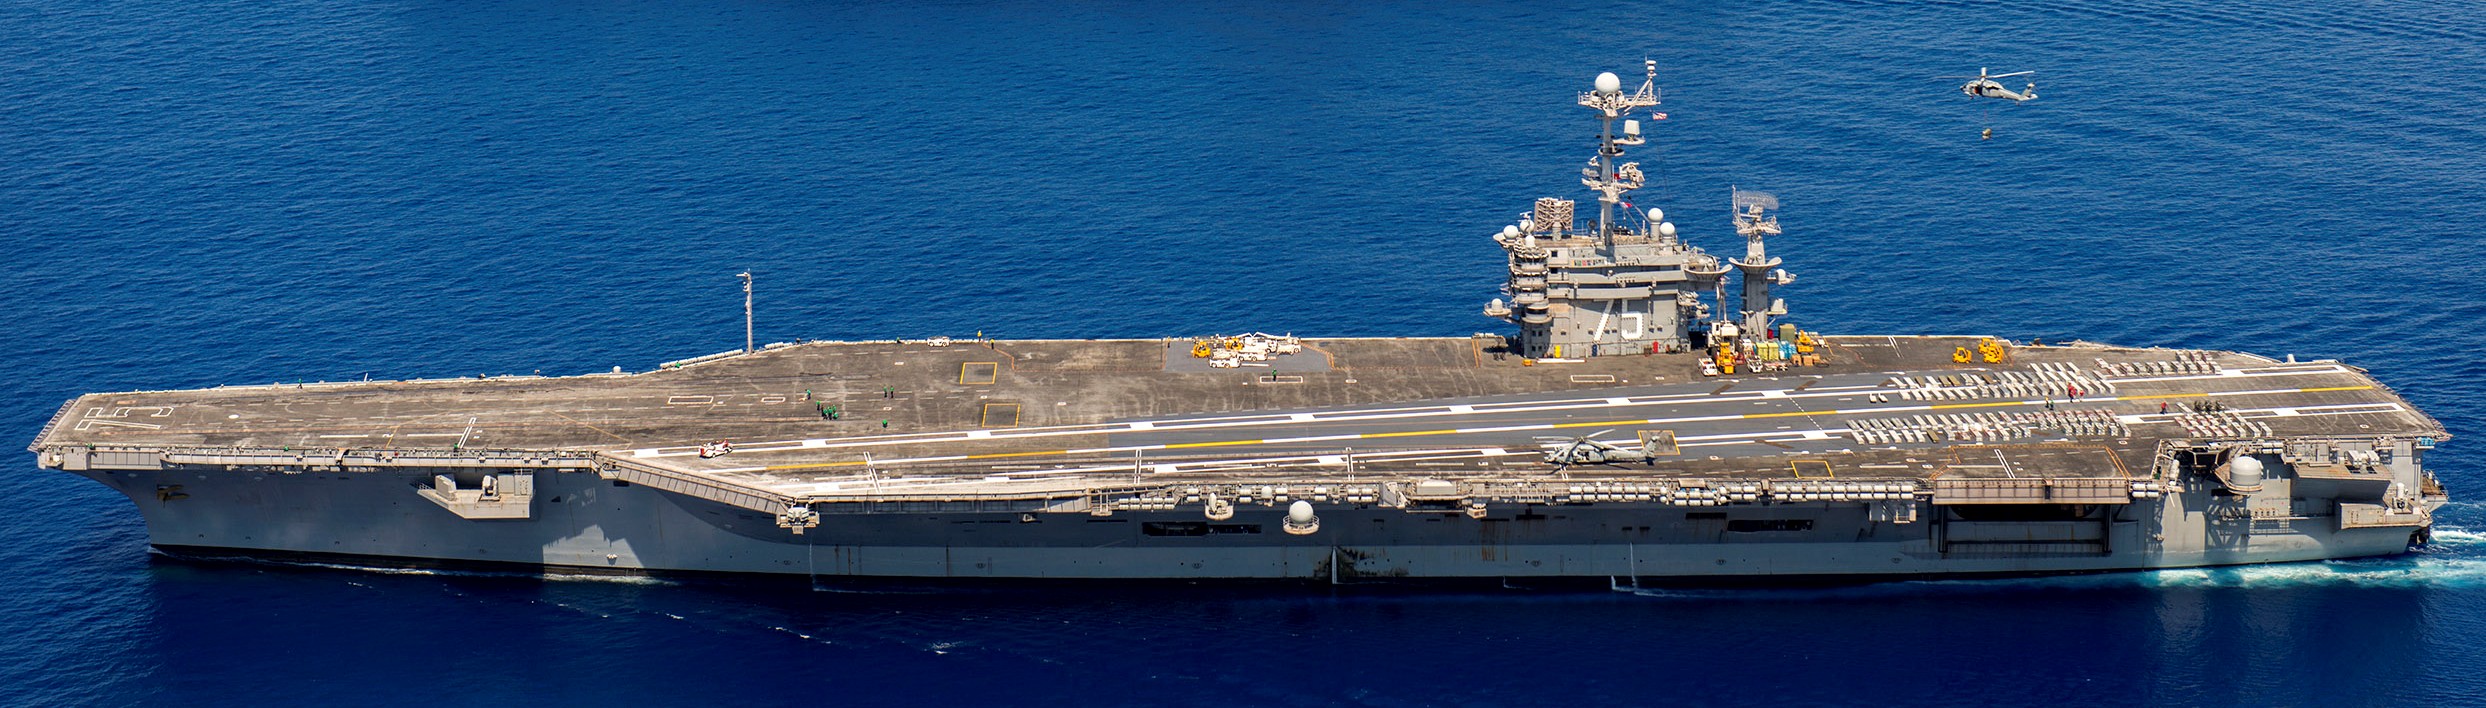 uss harry s. truman cvn-75 aircraft carrier 08